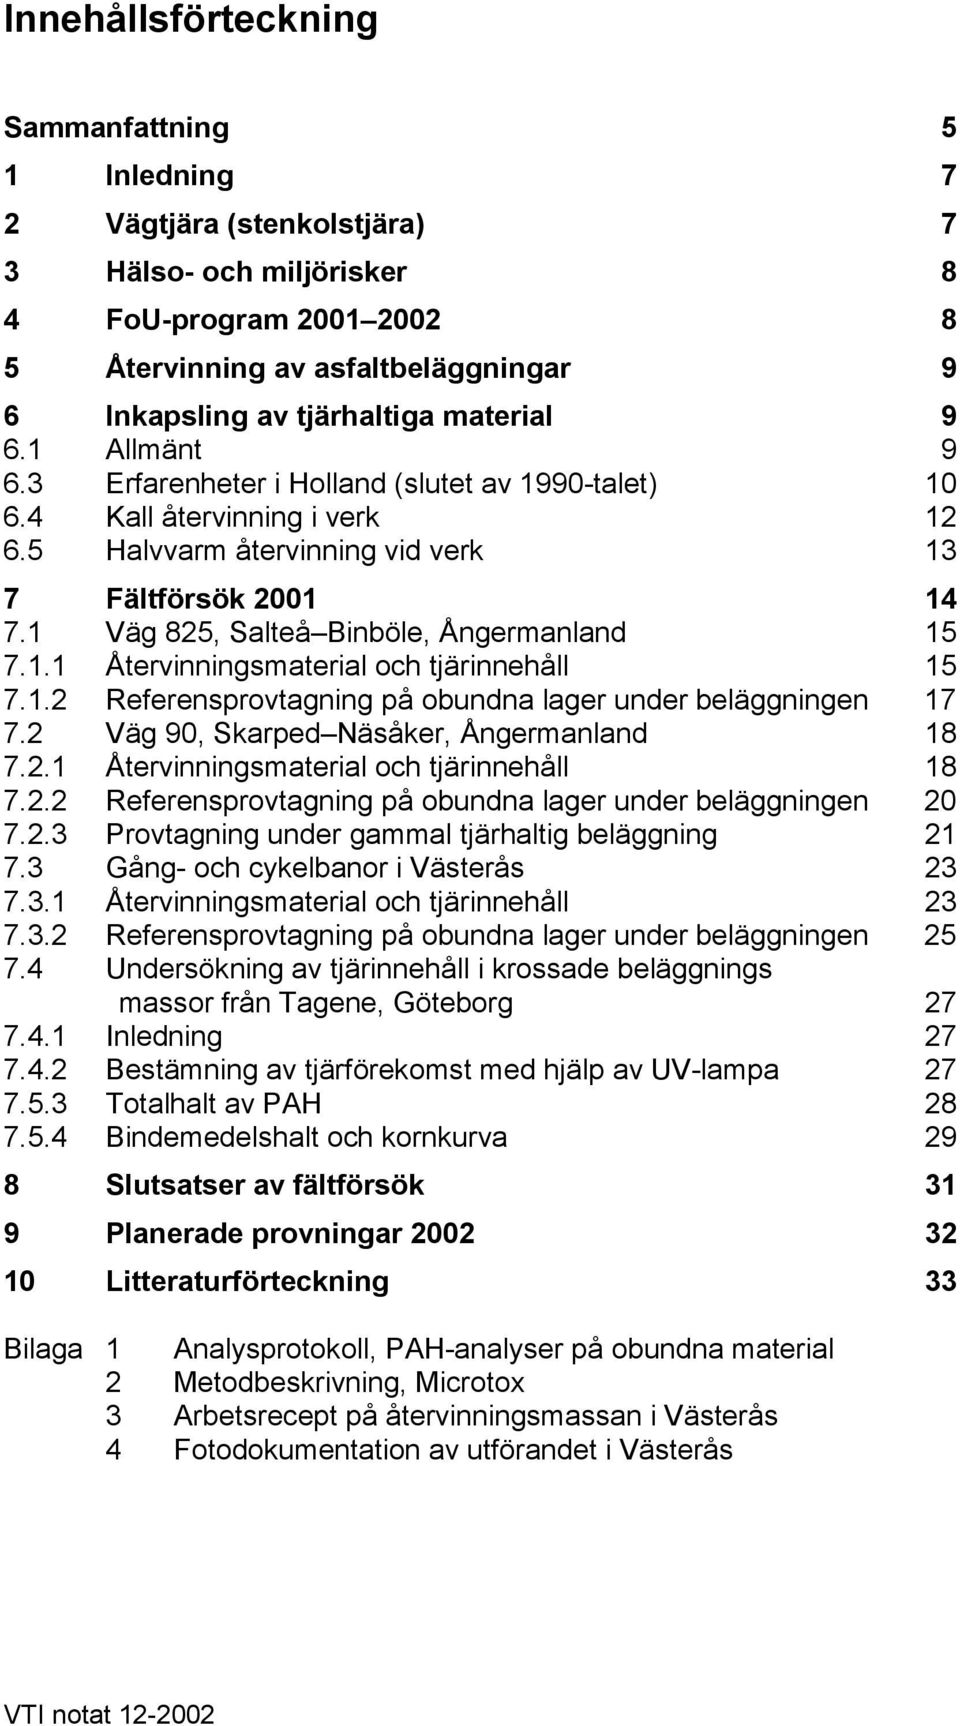 1 Väg 825, Salteå Binböle, Ångermanland 15 7.1.1 Återvinningsmaterial och tjärinnehåll 15 7.1.2 Referensprovtagning på obundna lager under beläggningen 17 7.